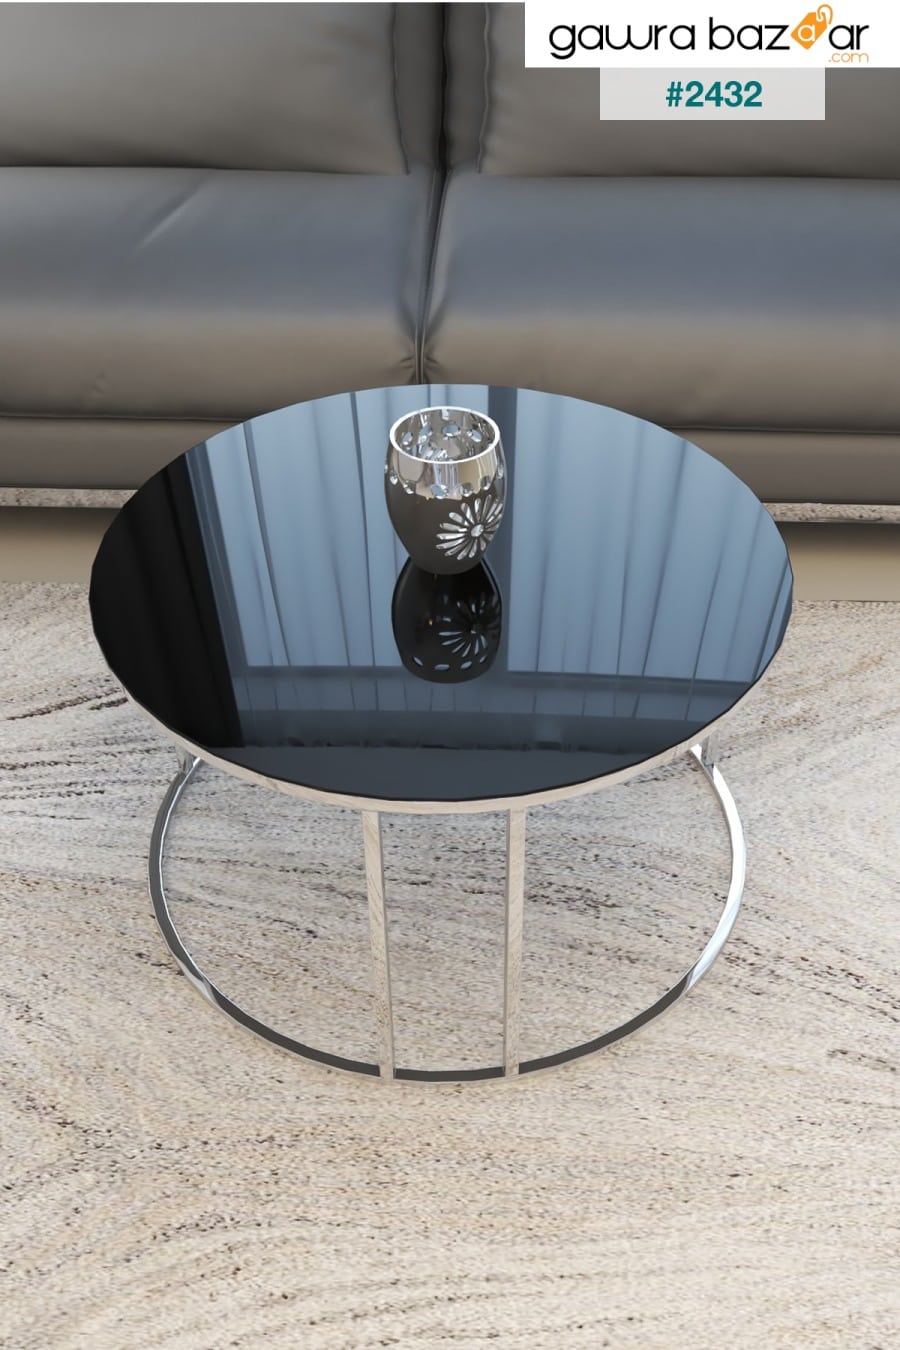 طقم طاولة متداخلة وطاولة مركزية من سيلين 4 أرجل فضية زجاج أسود Puklife 2